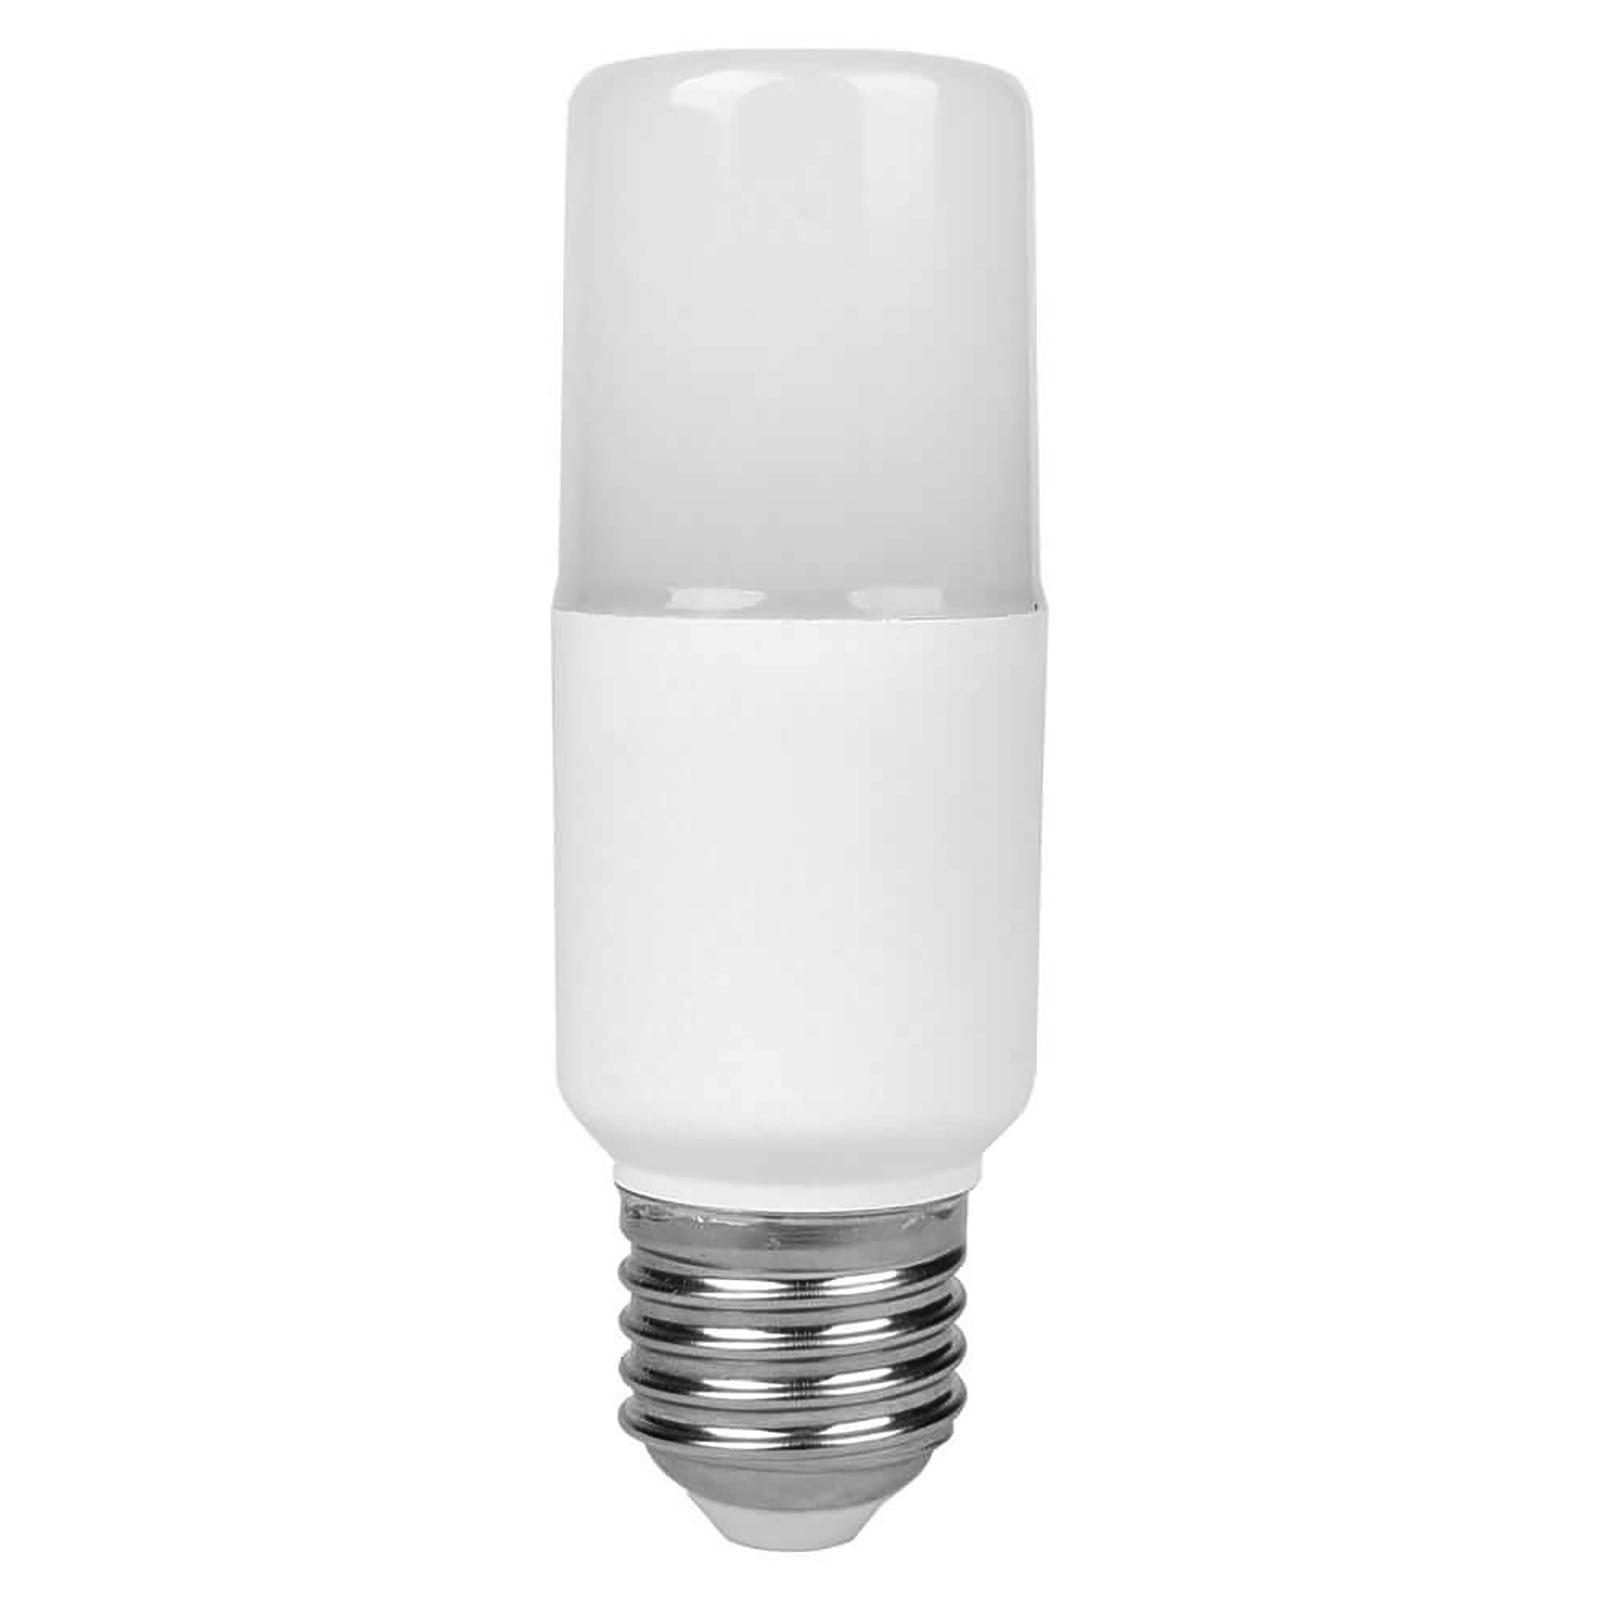 Acheter Vis E27 Base LED Lampe Ampoule Douille E27 À 2-E27